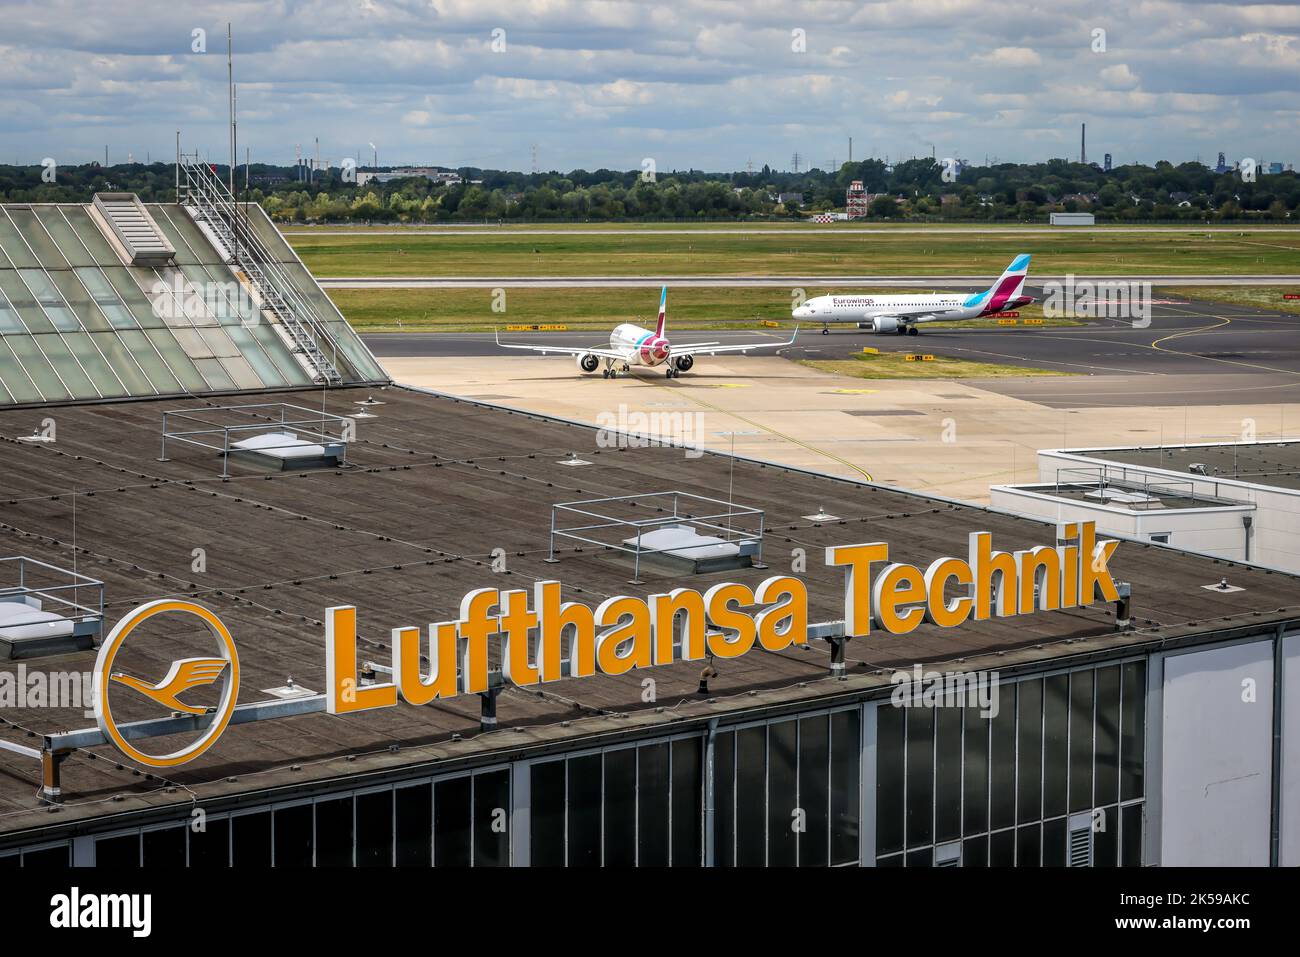 27.07.2022, Germania, Renania settentrionale-Vestfalia, Düsseldorf - Lufthansa Technik edificio LHT presso l'aeroporto di Duesseldorf, servizi MRO, manutenzione, riparazione e. Foto Stock